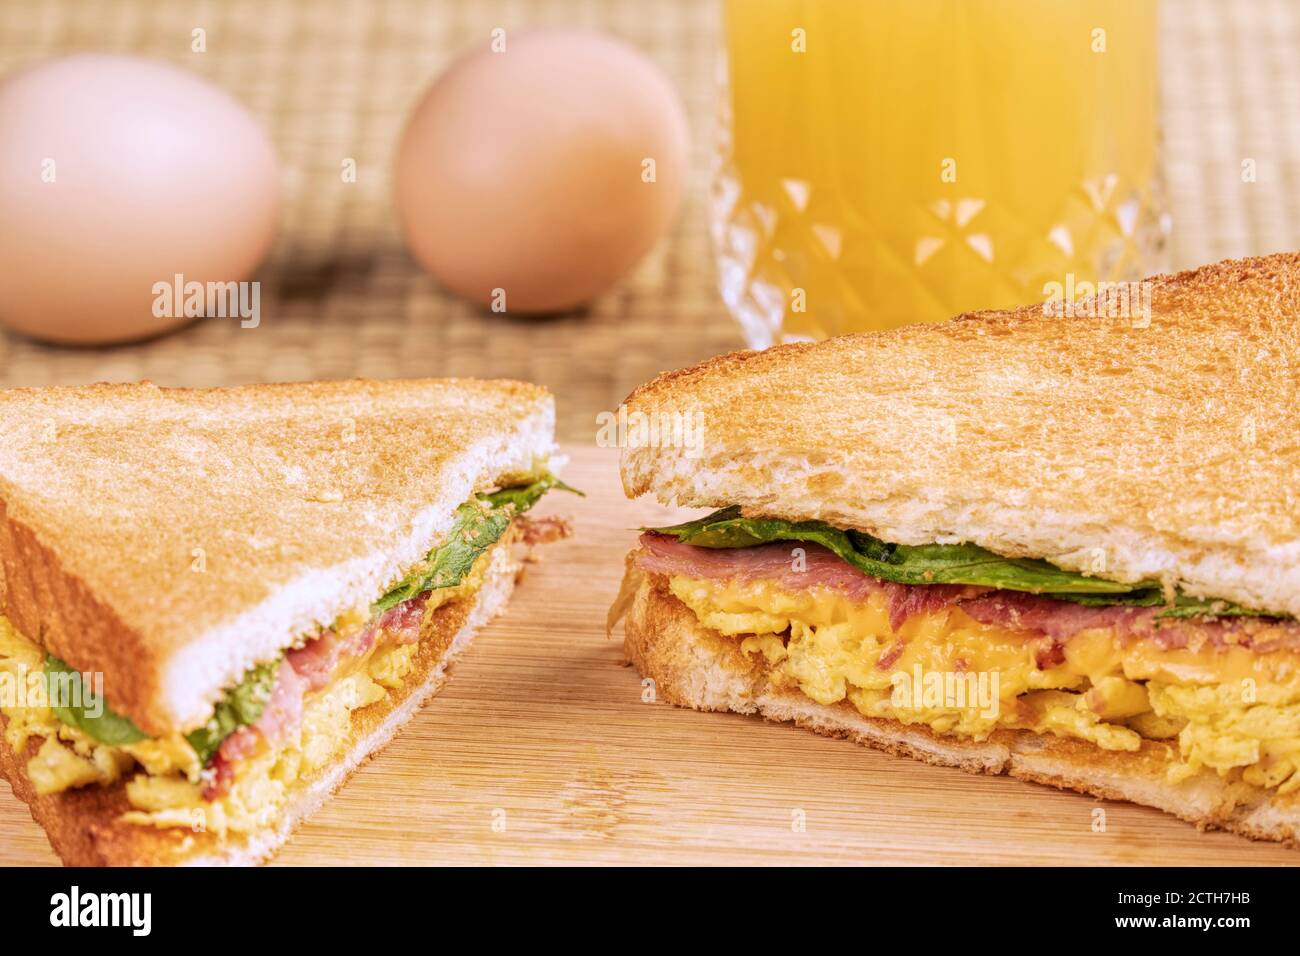 Ein leckeres Frühstückssandwich mit Rührei und Toast Bacon- und Kopierbereich Stockfoto